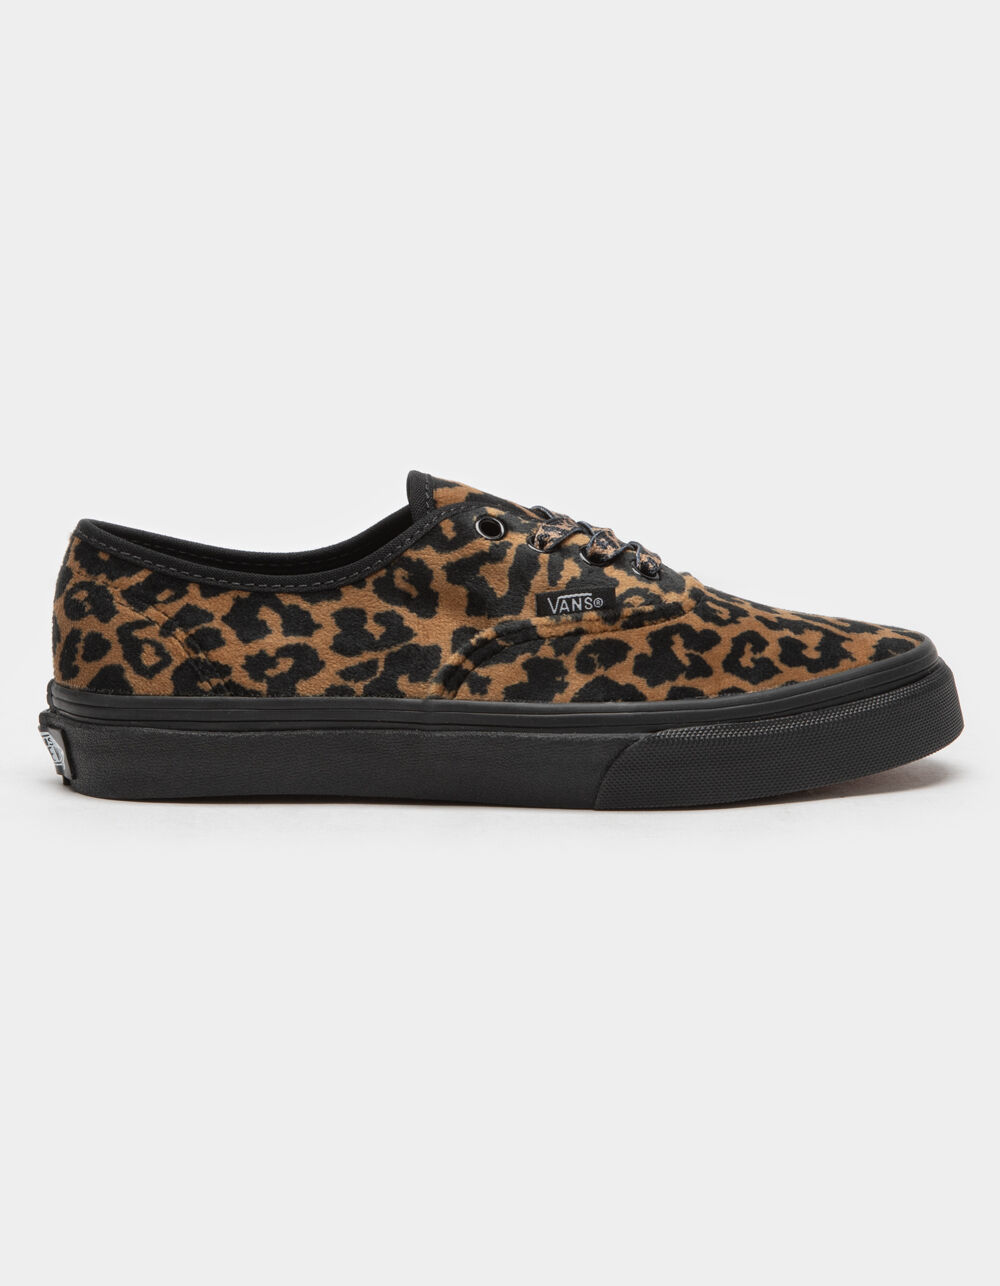 VANS Leopard Fur Authentic Juniors Shoes - LEOPARD | Tillys